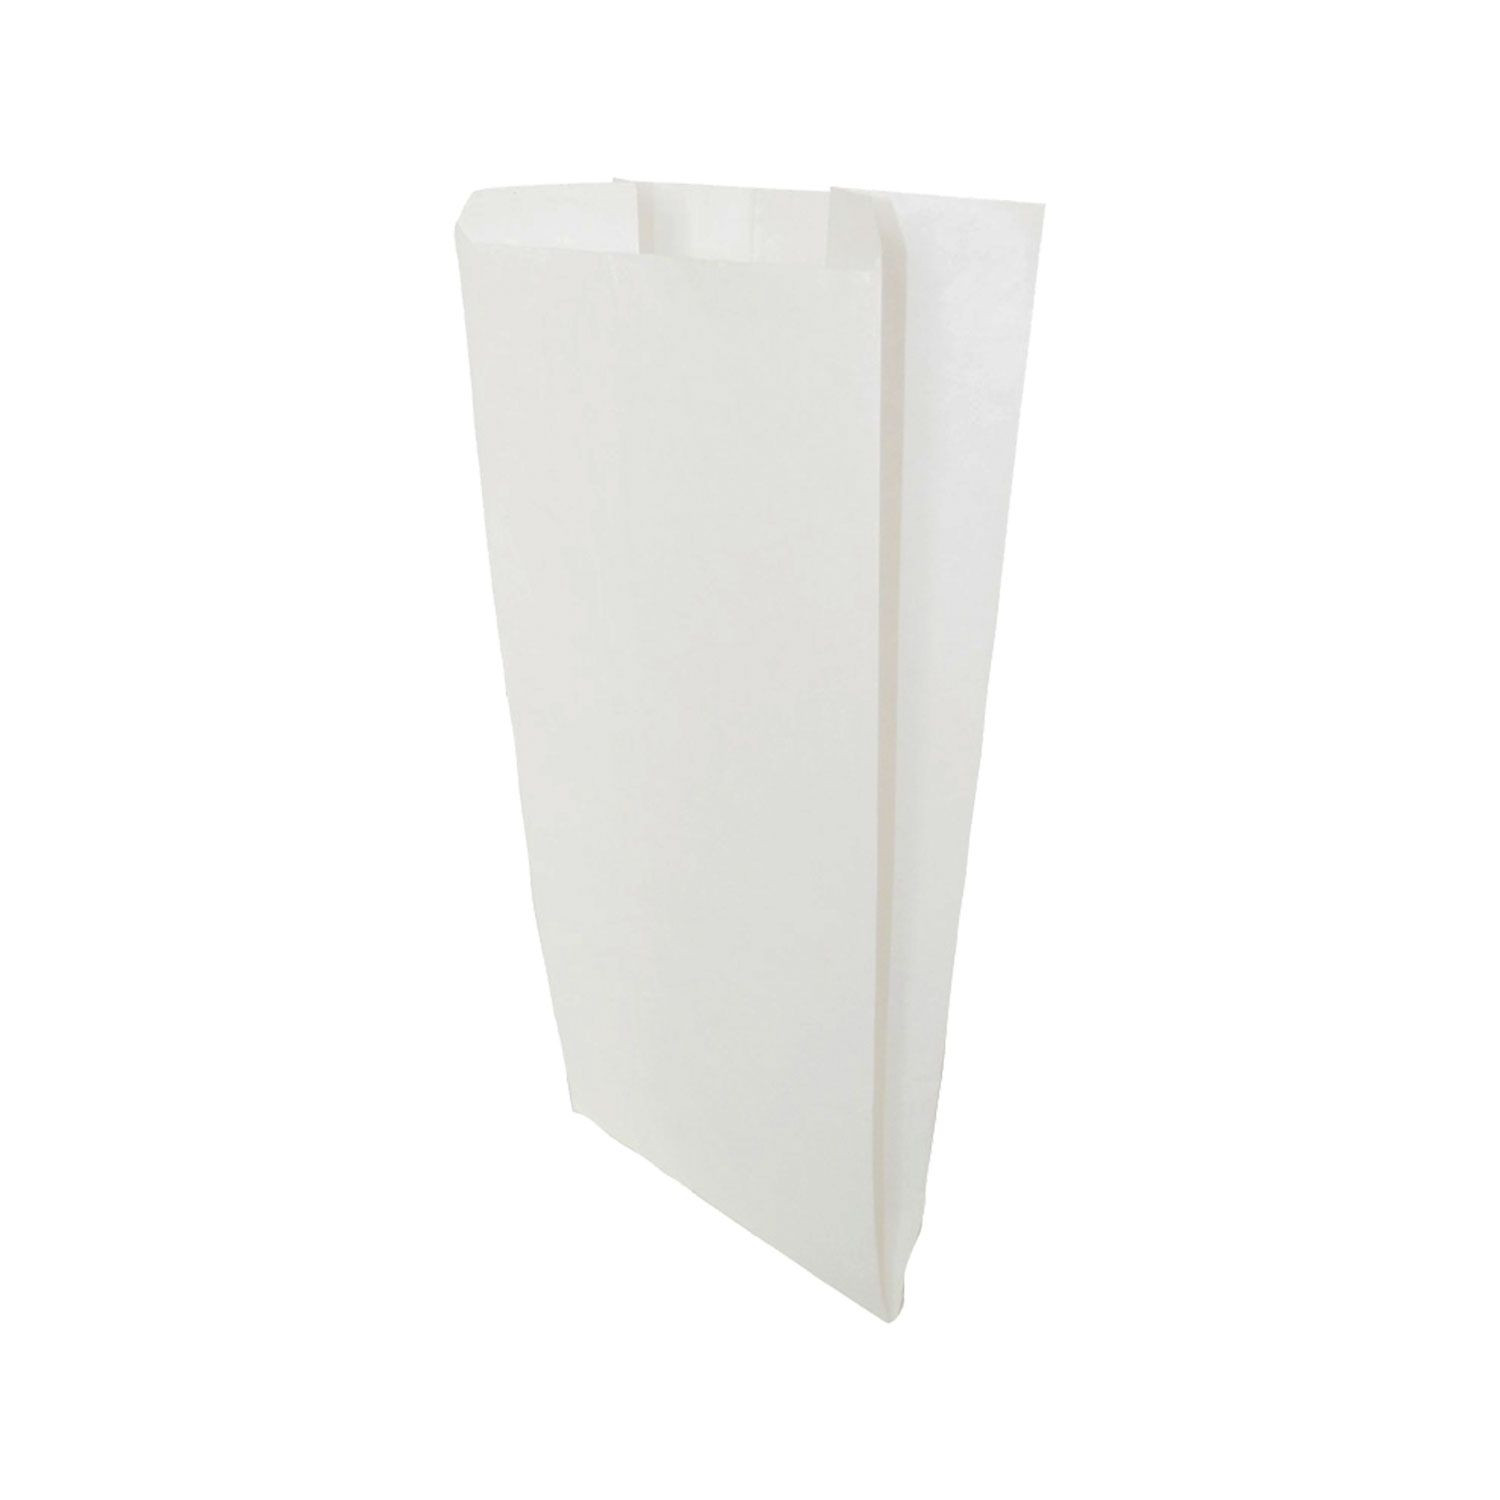 Sacchetti in carta kraft bianchi 15×35 per alimenti secchi o oggetti medio/ piccoli – confezione da 1000 pz – MEP Shop